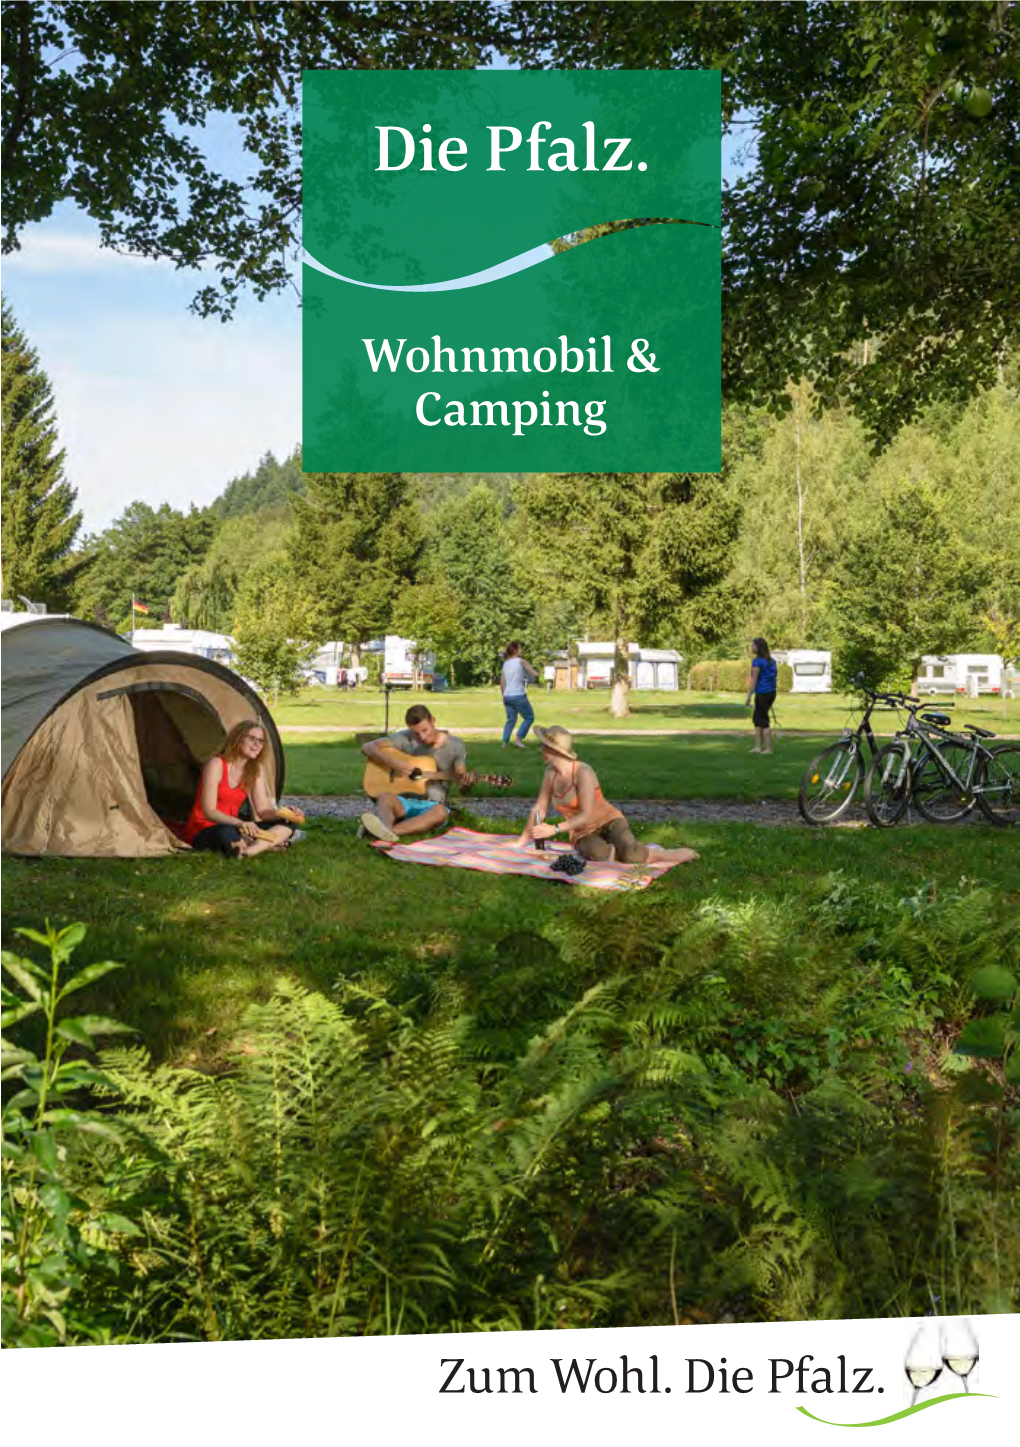 Die Pfalz. Wohnmobil & Camping 10.18 MB